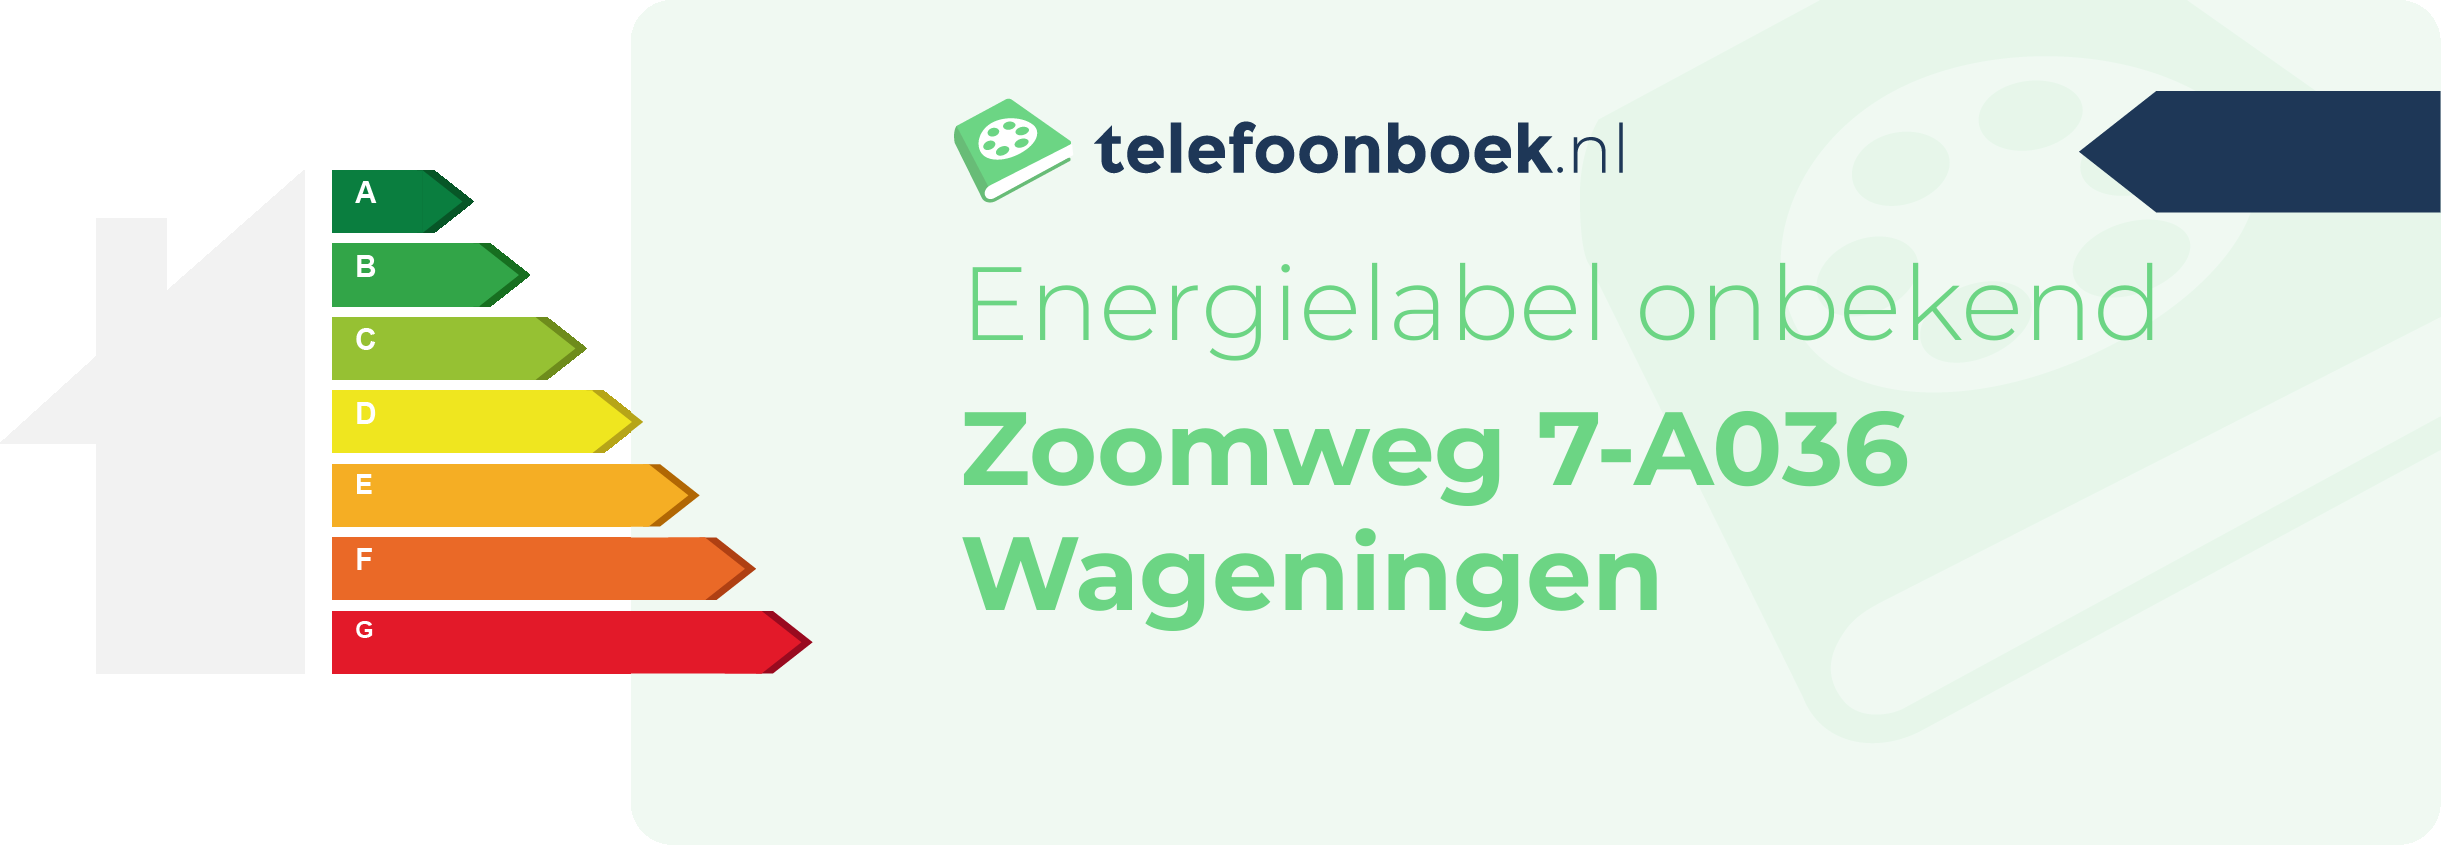 Energielabel Zoomweg 7-A036 Wageningen